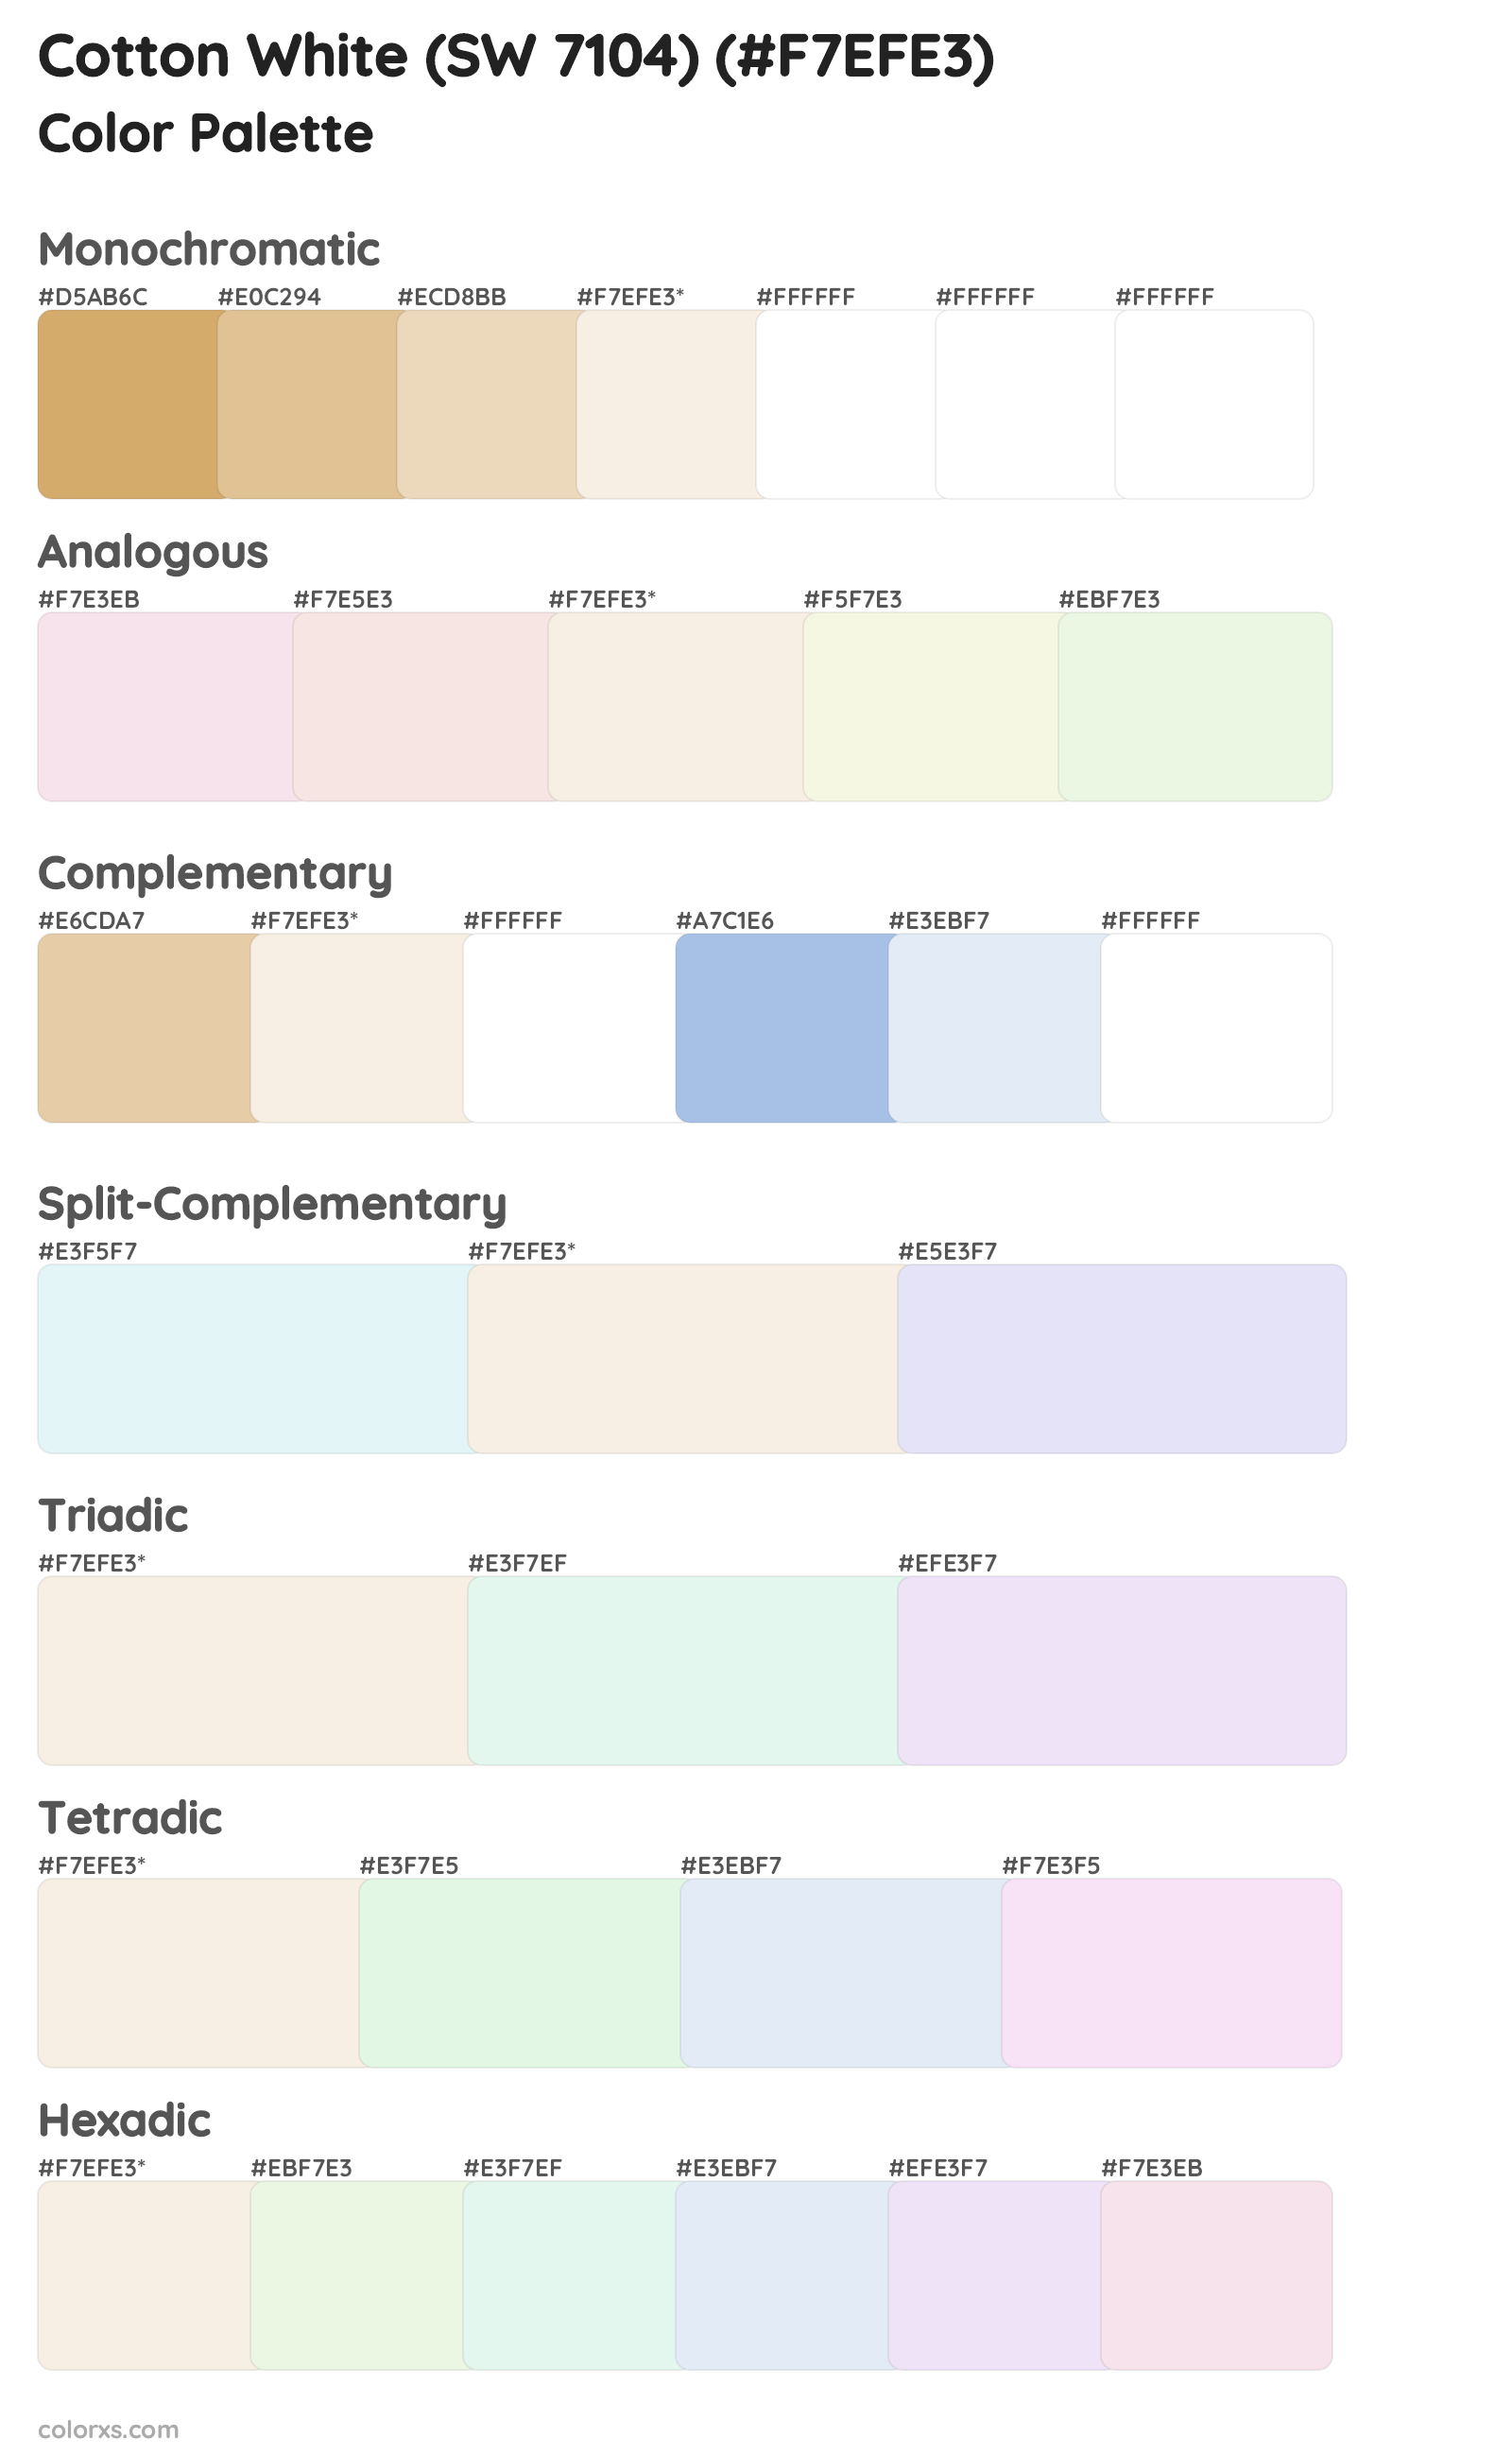 Cotton White (SW 7104) Color Scheme Palettes